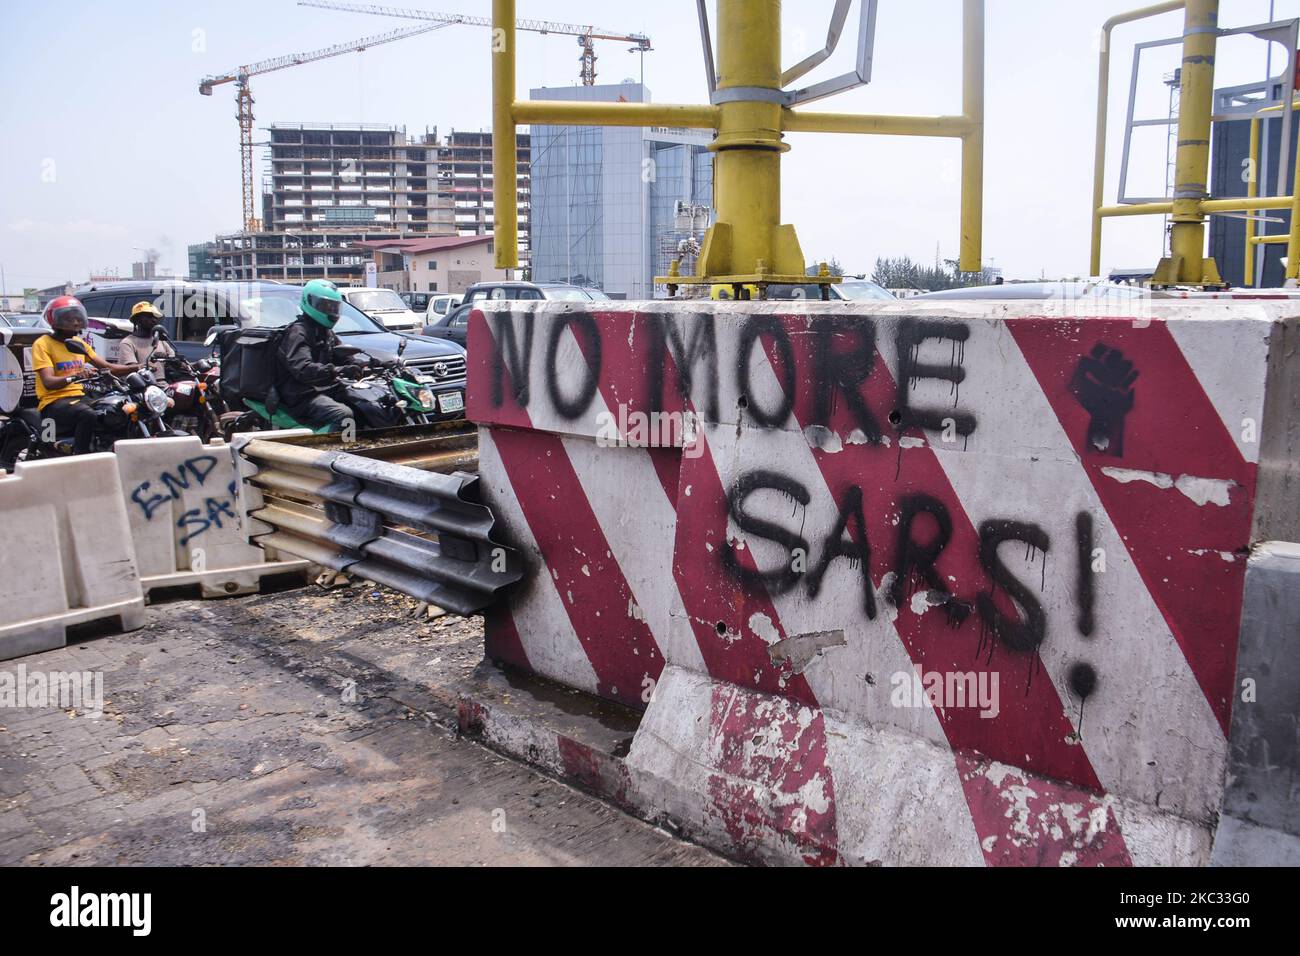 Ein Graffiti schreibt auf eine Barrikade (KEINE SARS MEHR) am Mauttor von Lekki, als das Untersuchungsgremium von Lagos am 30. Oktober 2020 das Mauttor von Lekki besucht, um dort eine Inspektion zu machen und weitere Erkenntnisse über die Schießerei am 20. Oktober 2020 zu erhalten. Anhörung der von der Regierung des Staates Lagos eingeräumten Justizbehörde für Untersuchung und Rückgabe von Vorwürfen von Brutalität und Hochhändigkeit durch Mitarbeiter der aufgelöstem Spezial-Anti-Raub-Kader (SARS), Das Panel besucht die Szene zur Inspektion und um weitere Erkenntnisse über die Schießerei am 20. Oktober 2020 zu erhalten. ( Stockfoto